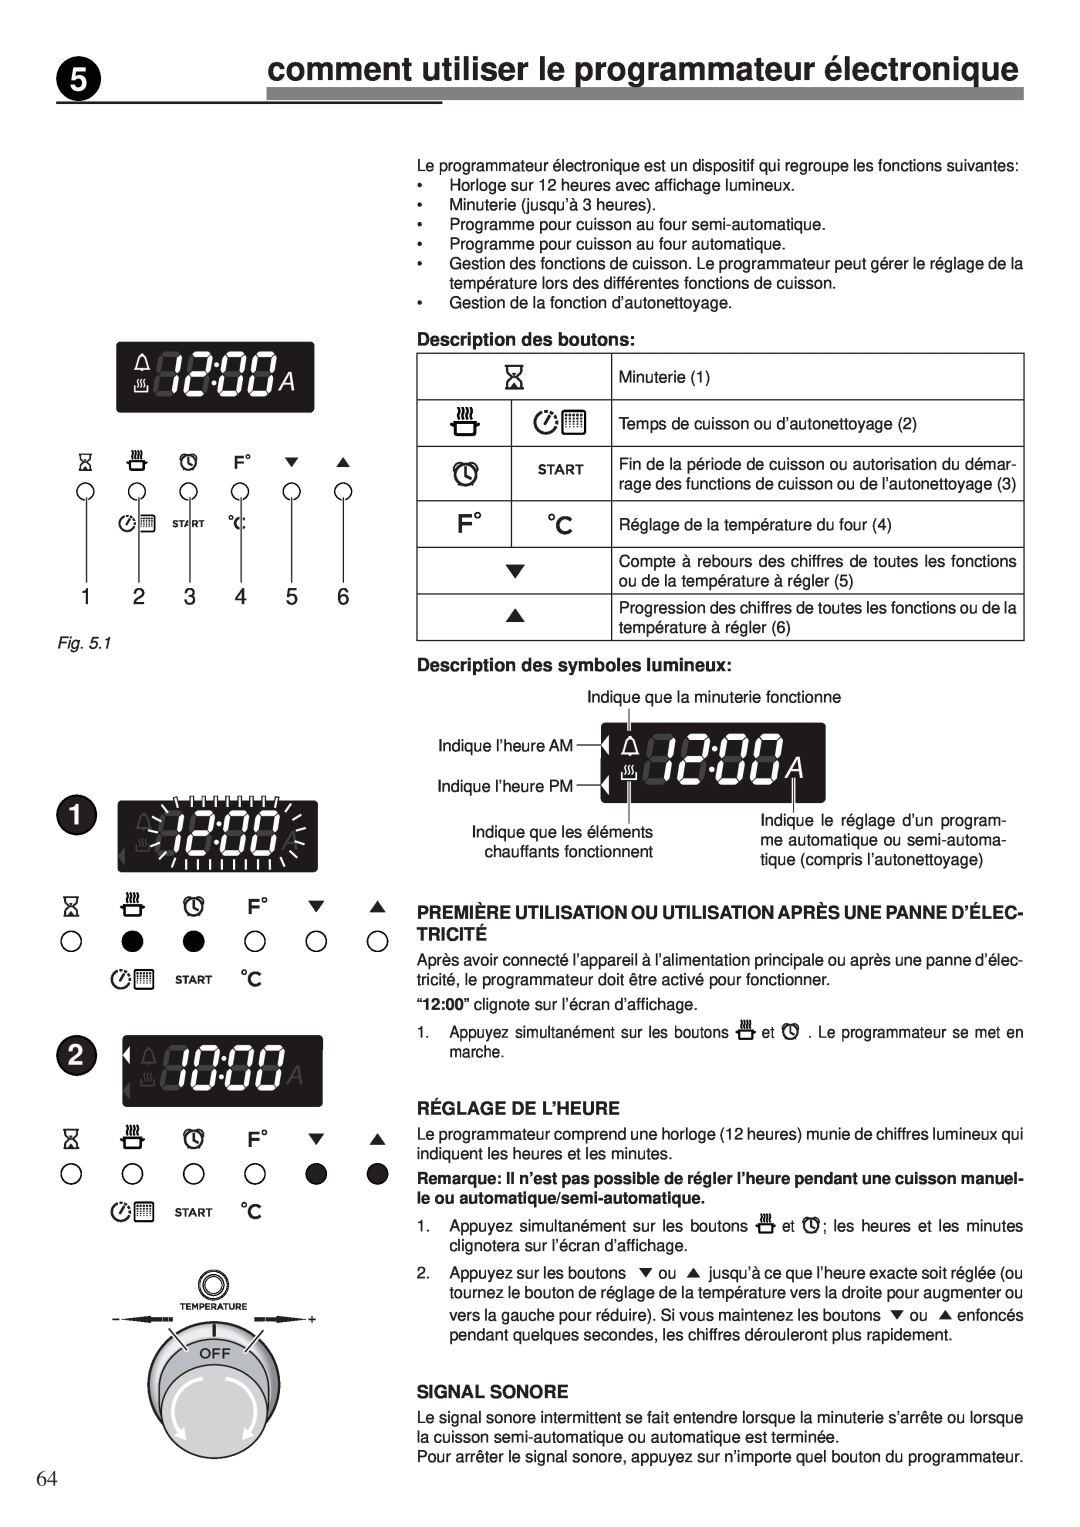 Fisher & Paykel OR30SDPWGX comment utiliser le programmateur électronique, Description des boutons, Réglage De L’Heure 